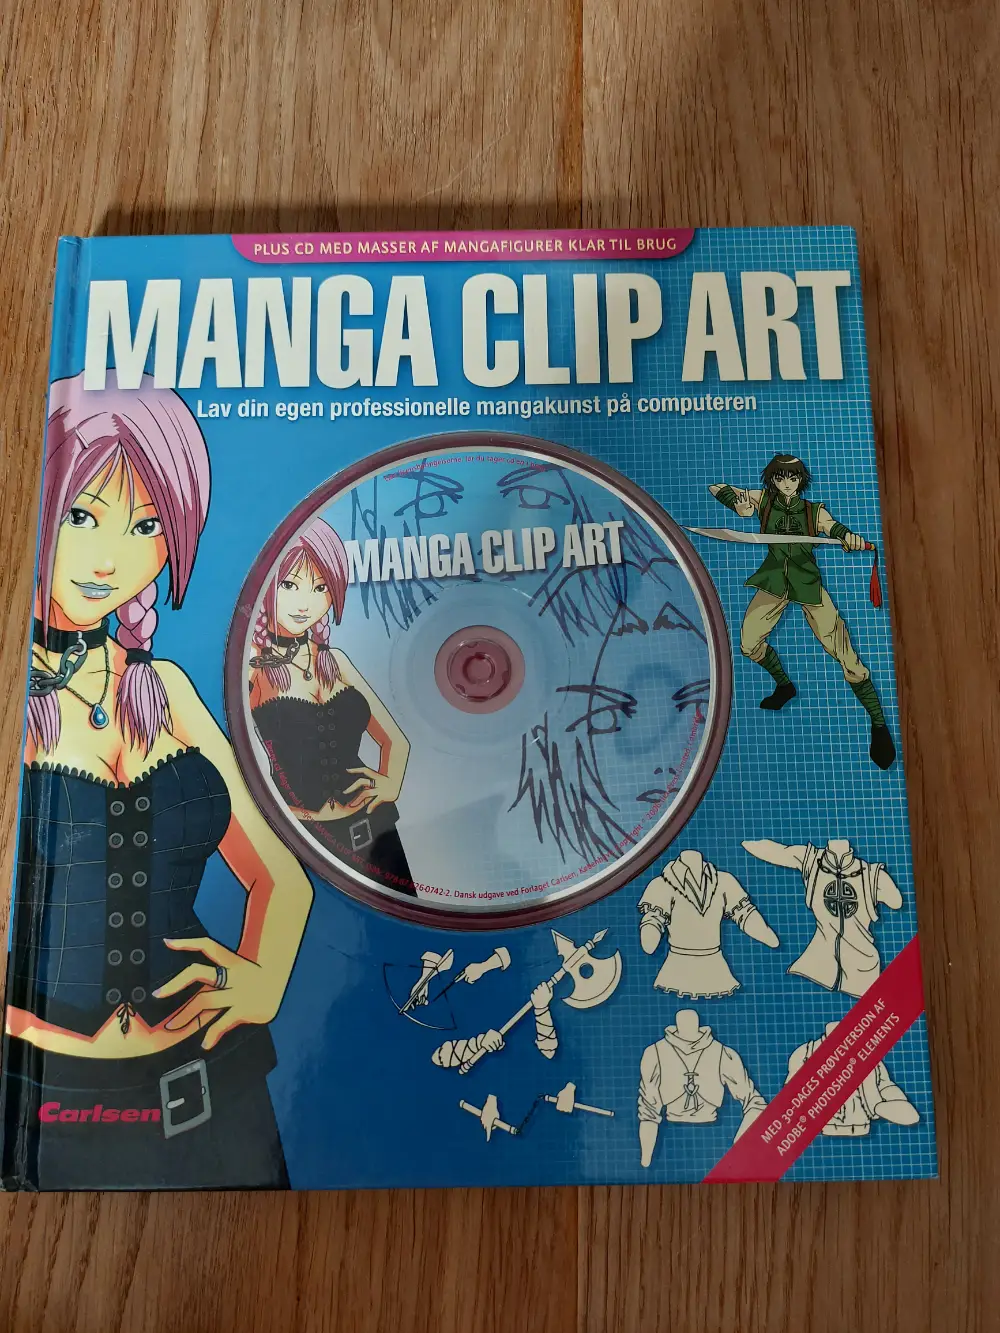 Manga clips art Bog og CD